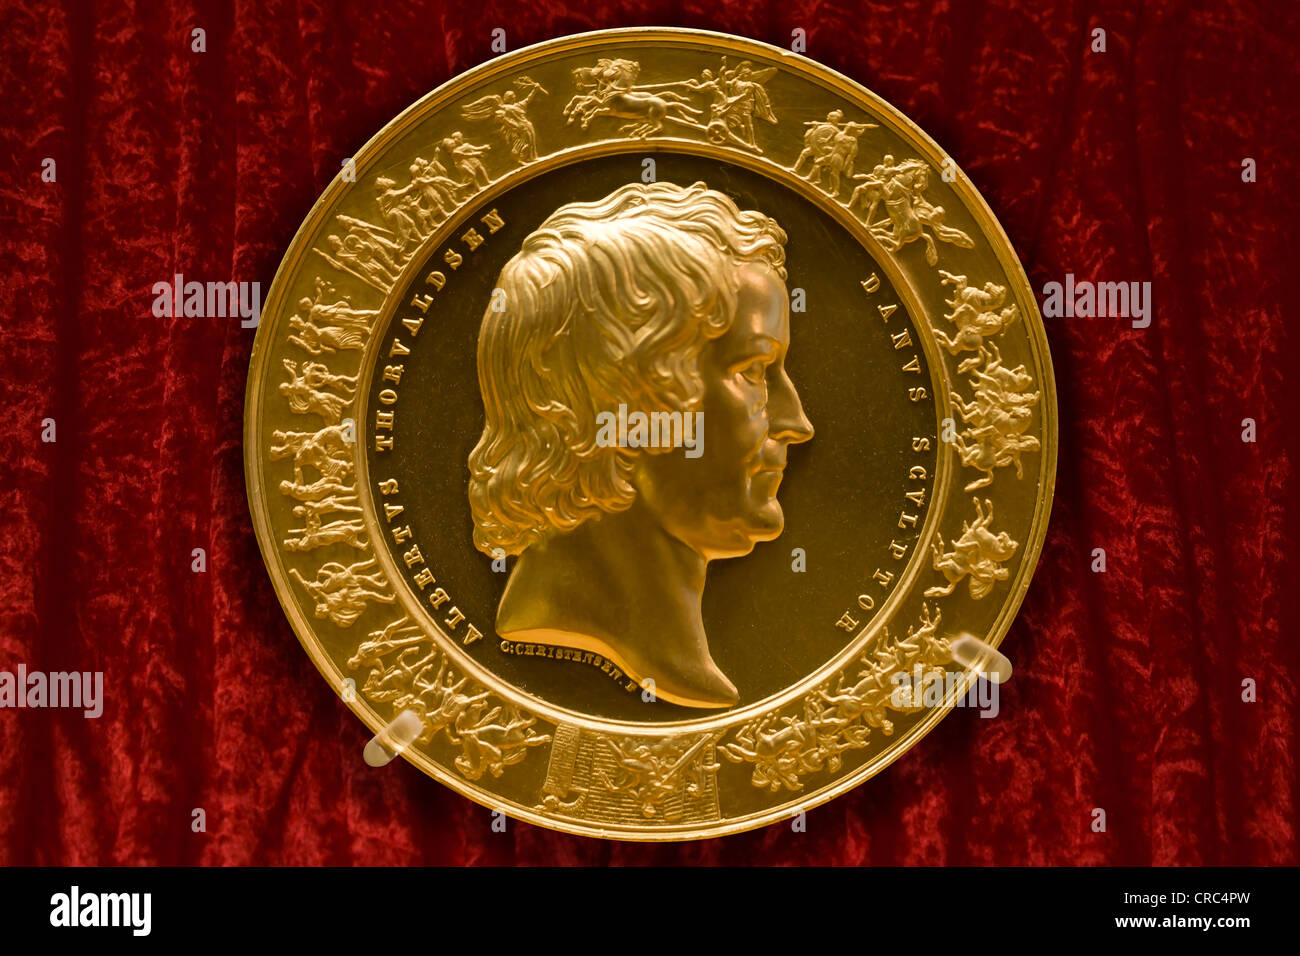 Portrait medal of the famous Danish sculptor Bertel Thorvaldsen Stock Photo